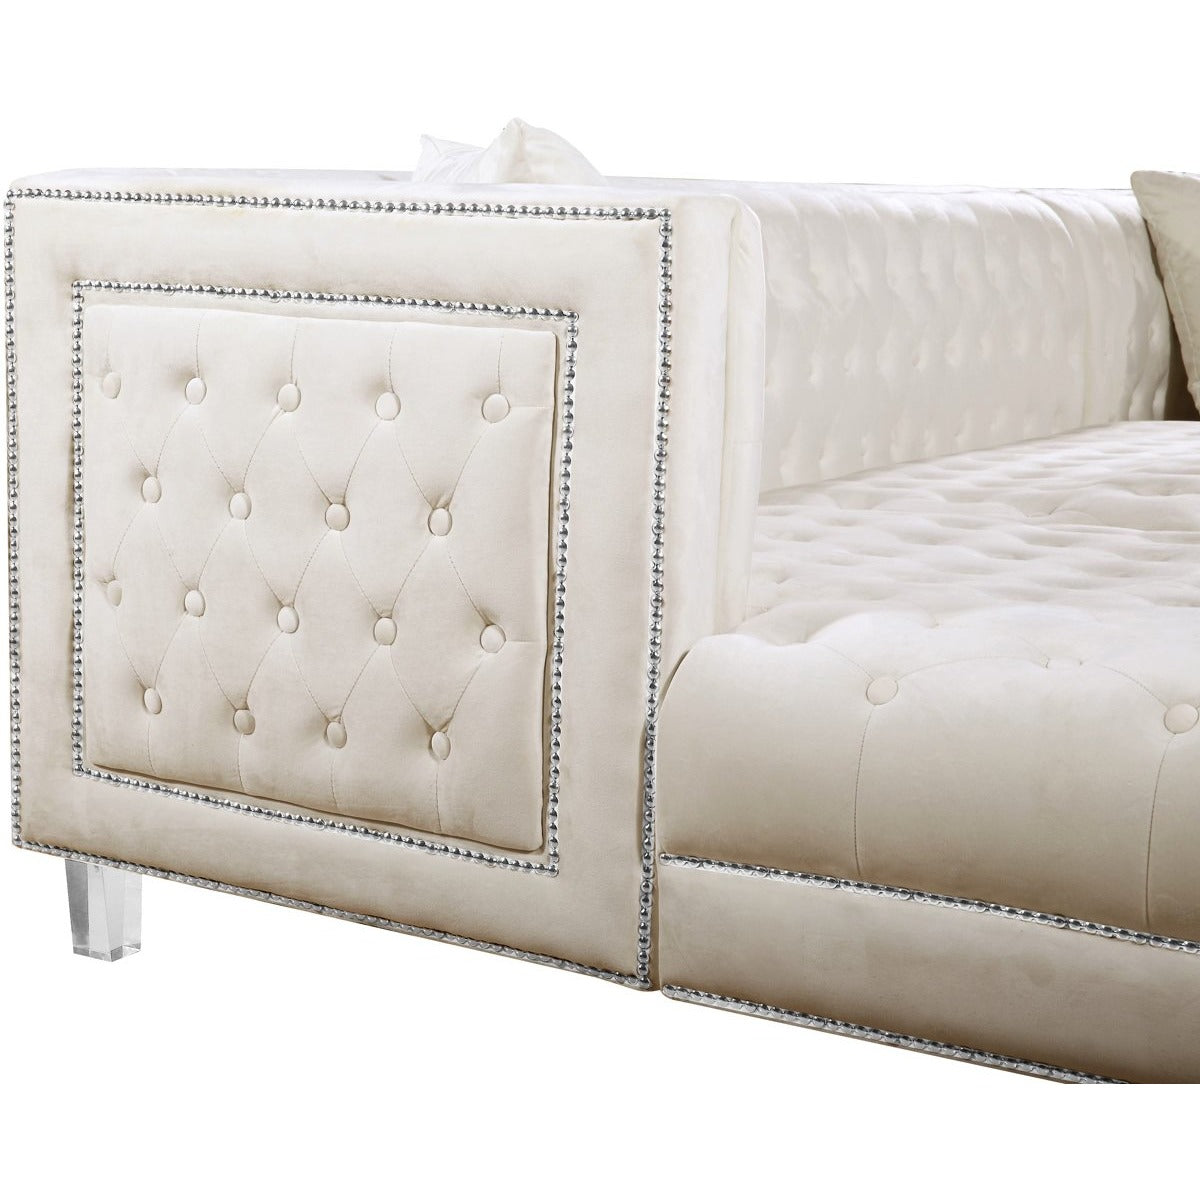 Meridian Furniture Moda Cream Velvet 3pc. Sectional-Minimal & Modern